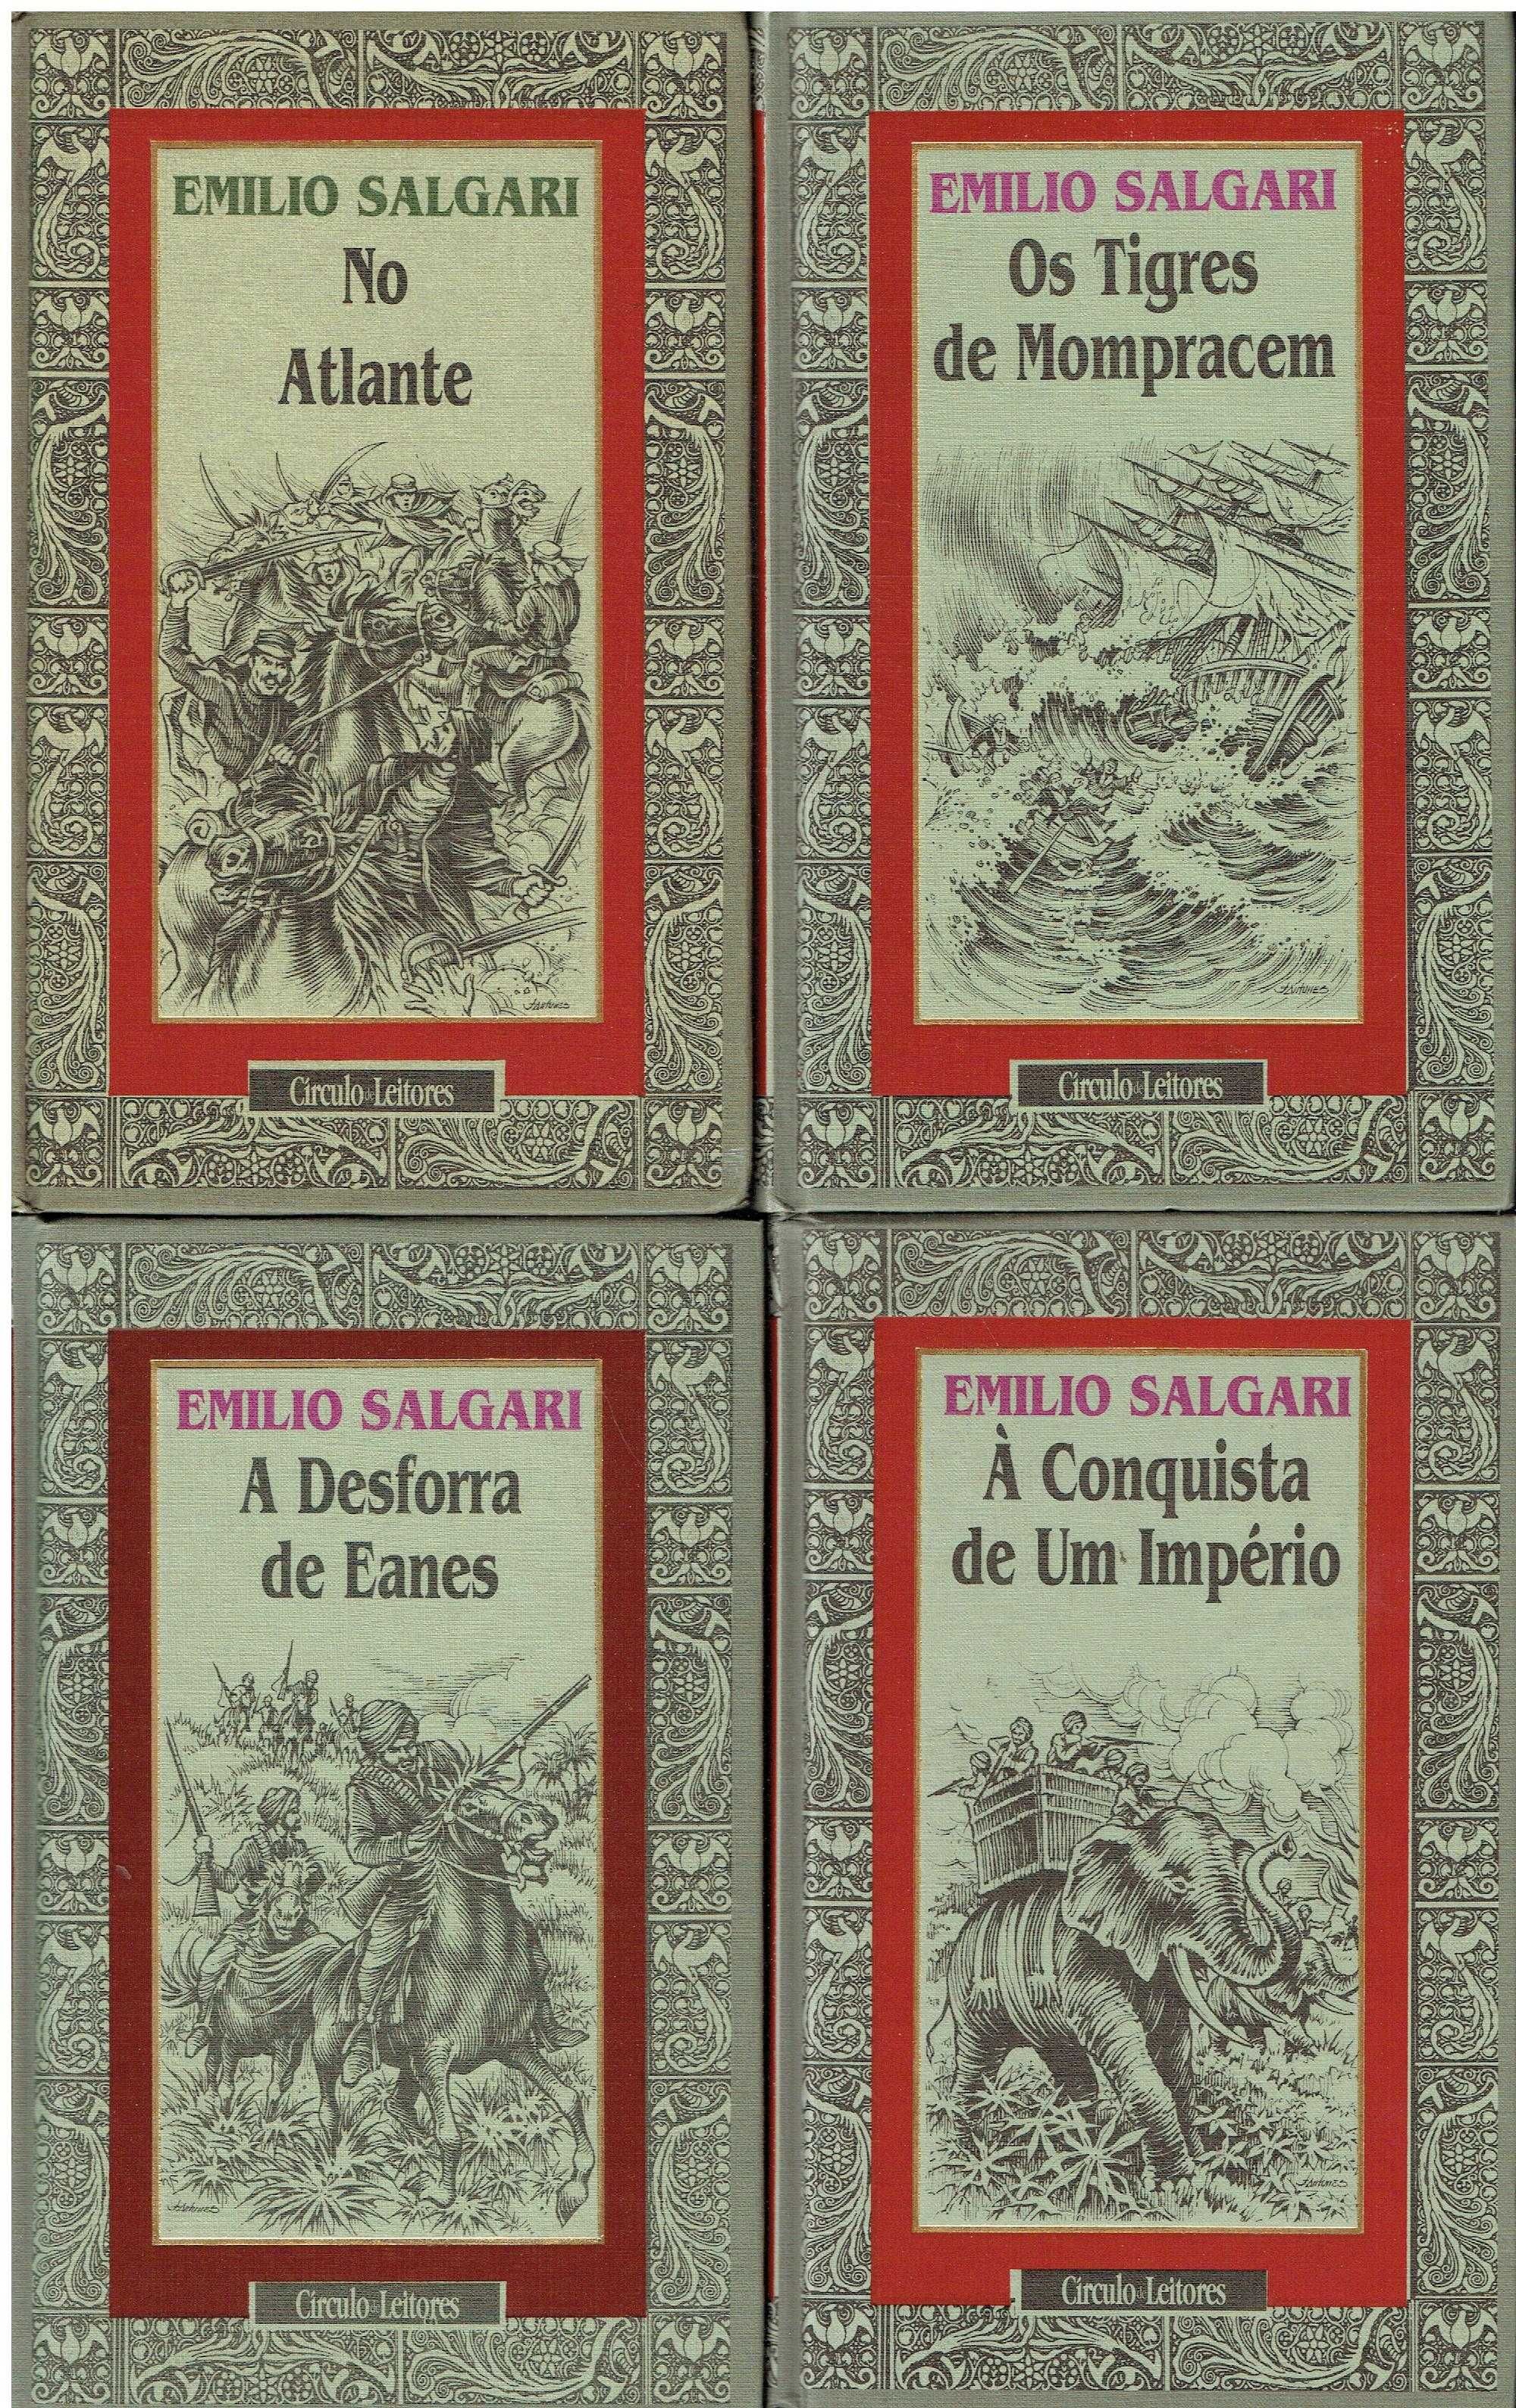 7865

Coleção Emílio Salgari

Circulo de Leitores